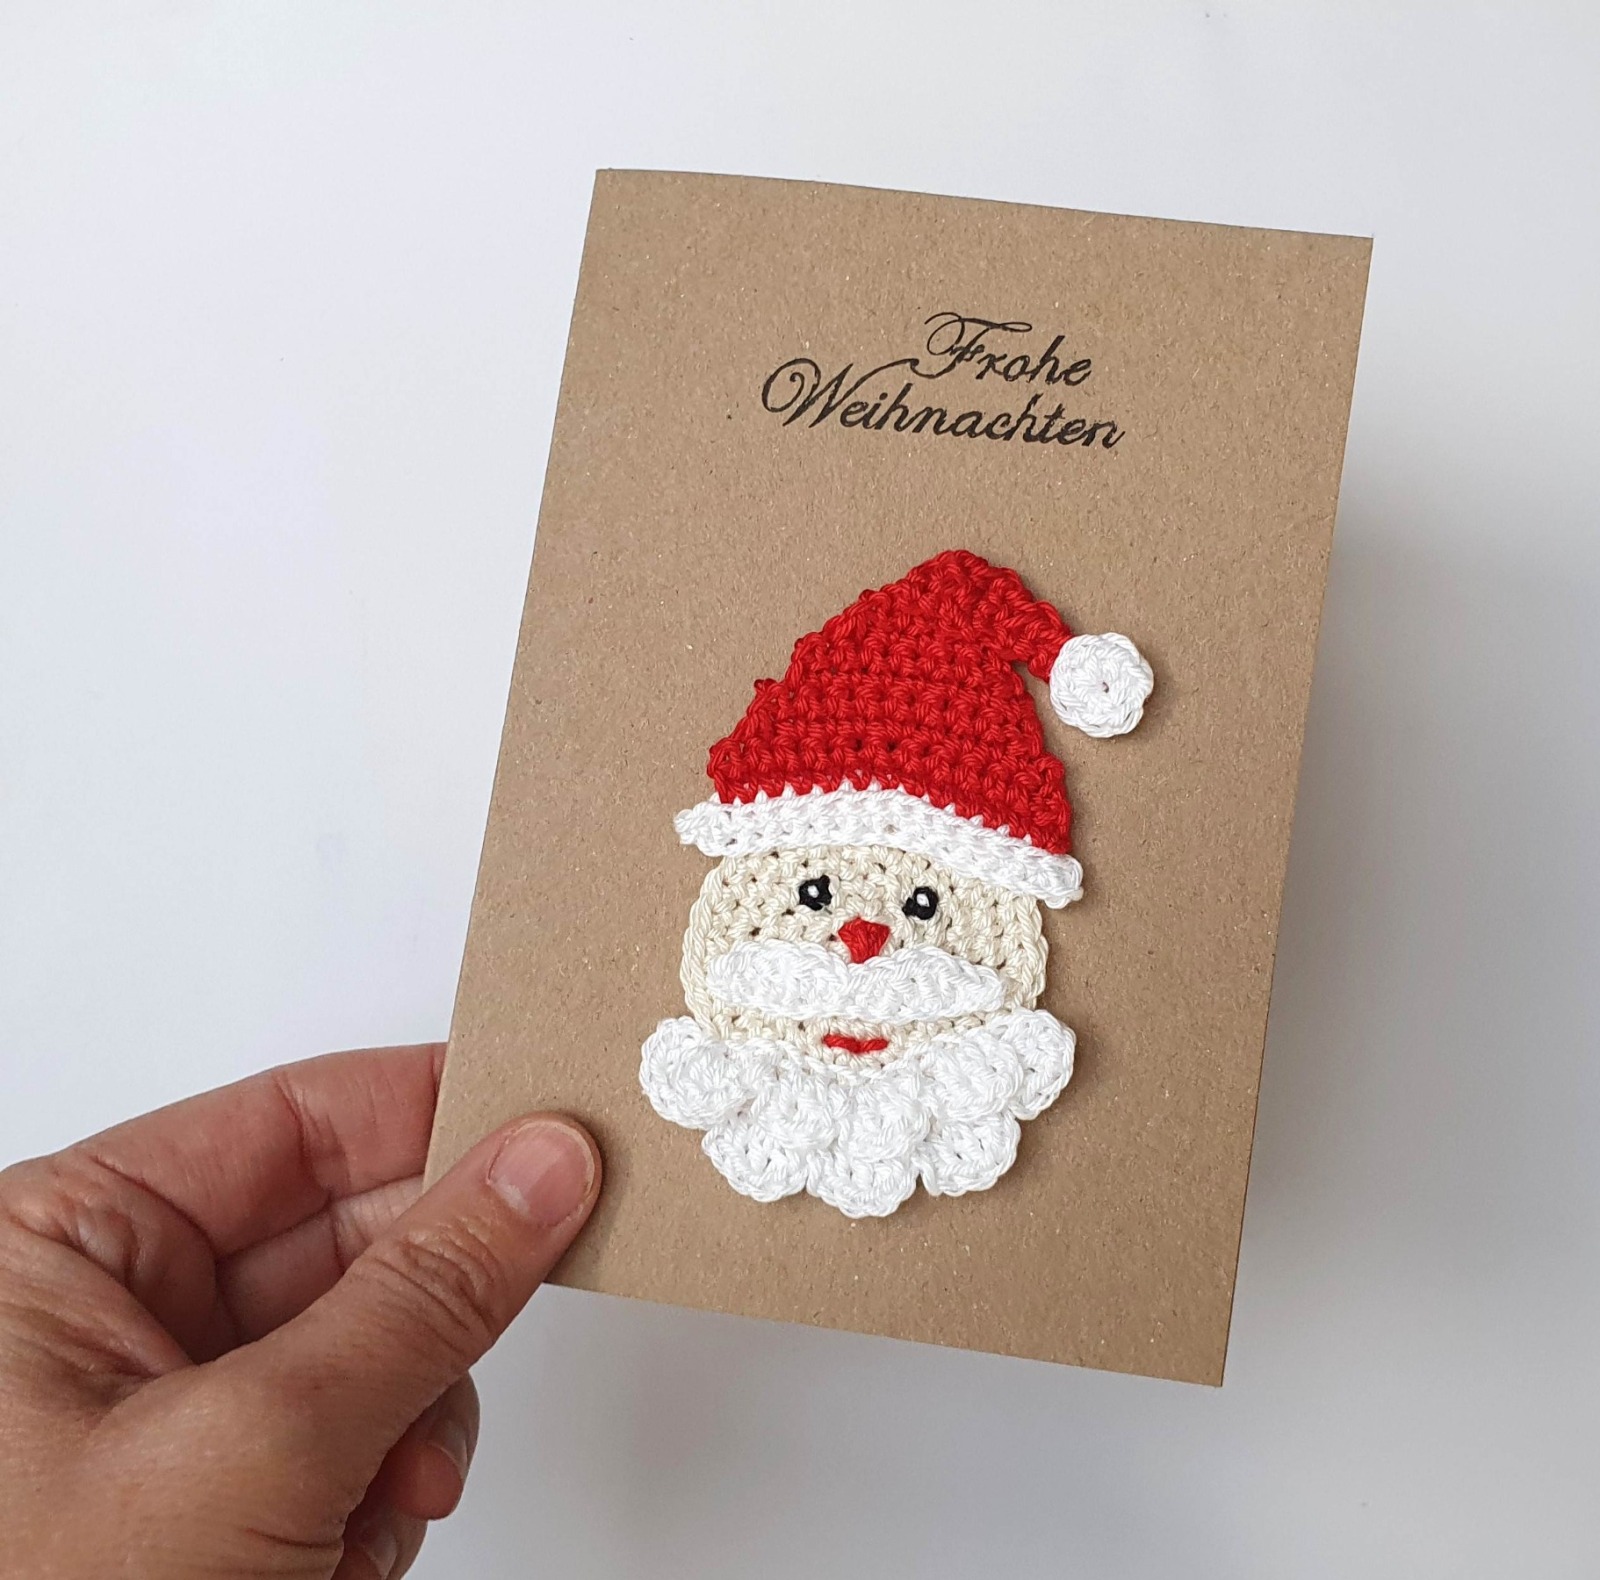 Handgemachte Weihnachtskarte mit süßem gehäkeltem Weihnachtsmann 6